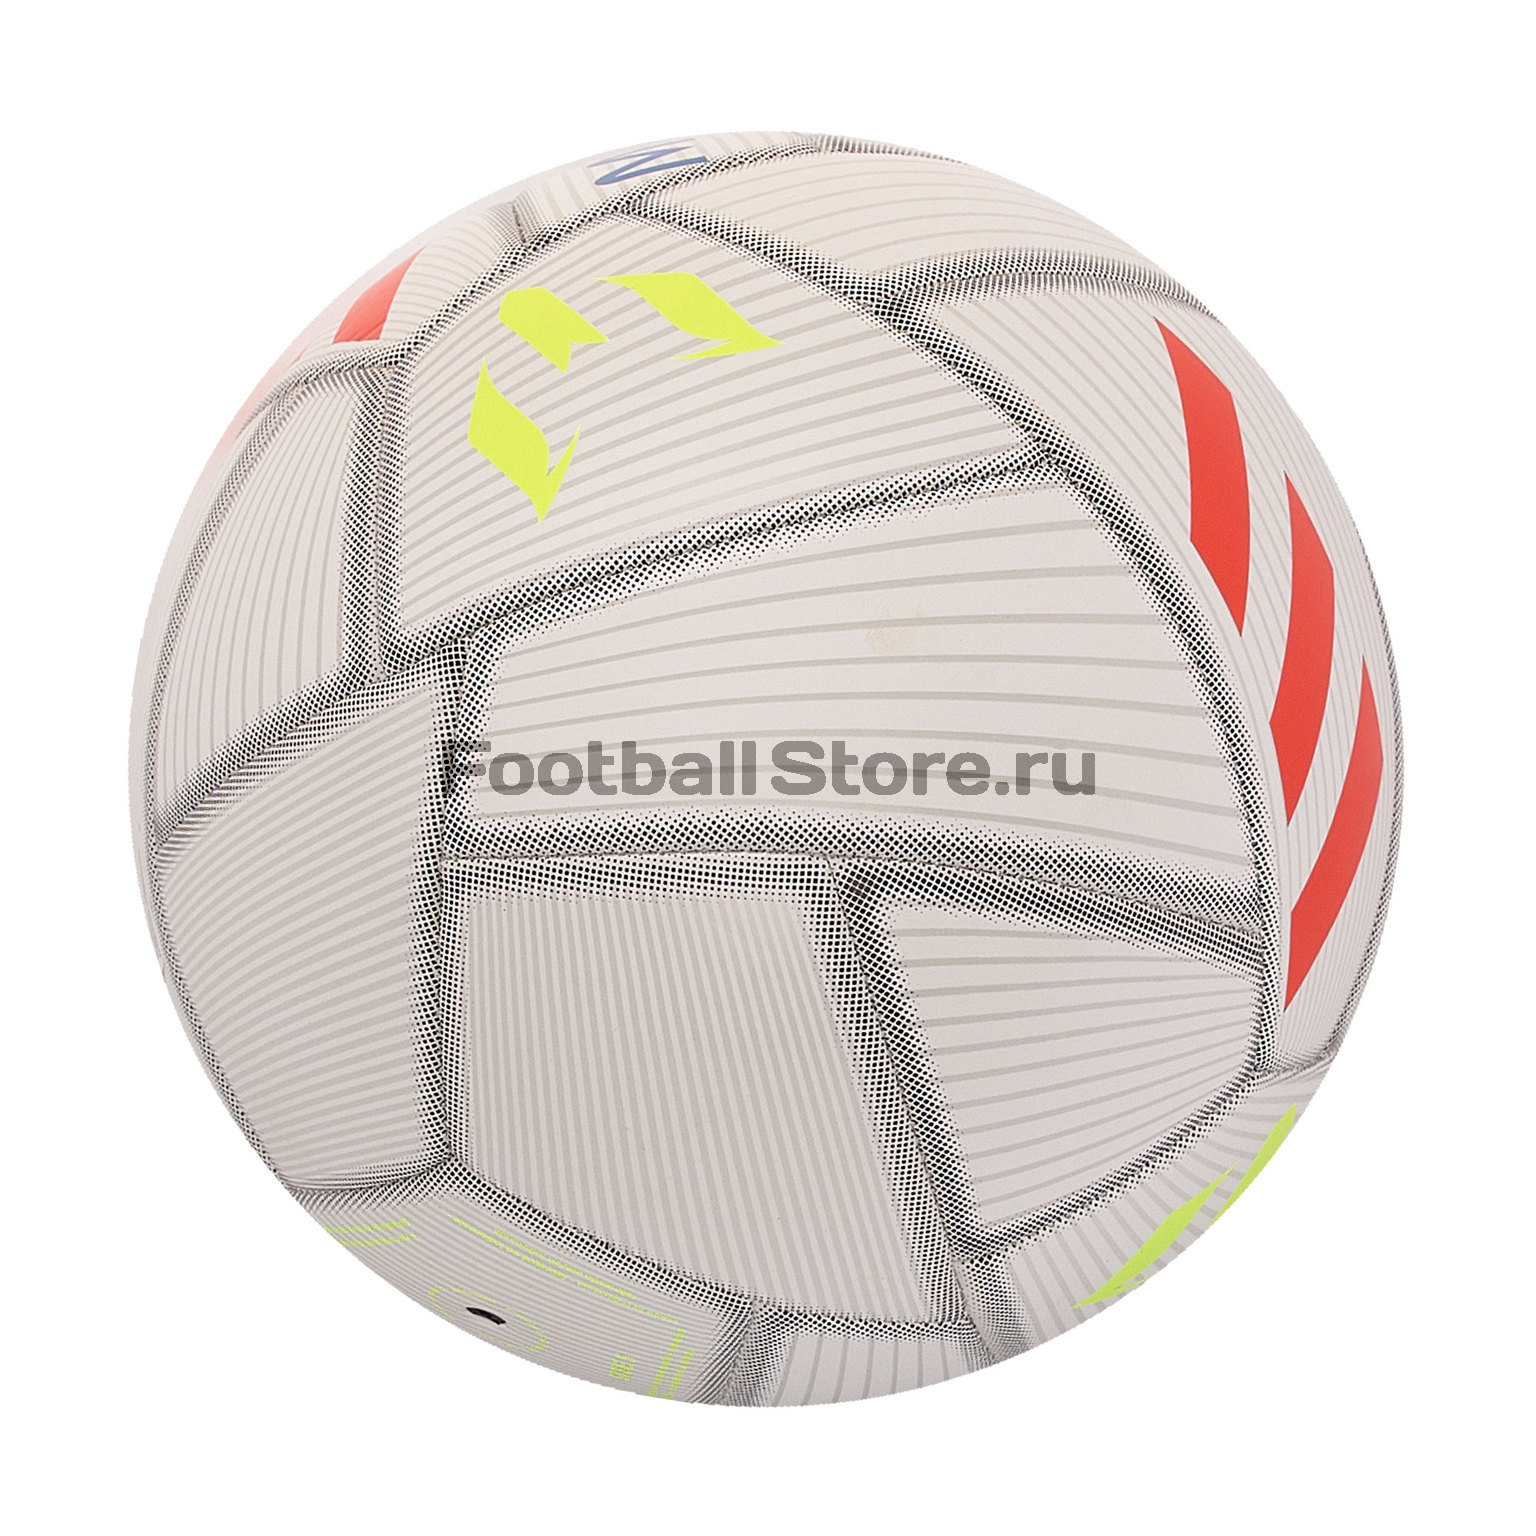 Ecología aprender Sobriqueta Футбольный мяч Adidas Messi DY2467 – купить в интернет магазине  footballstore, цена, фото